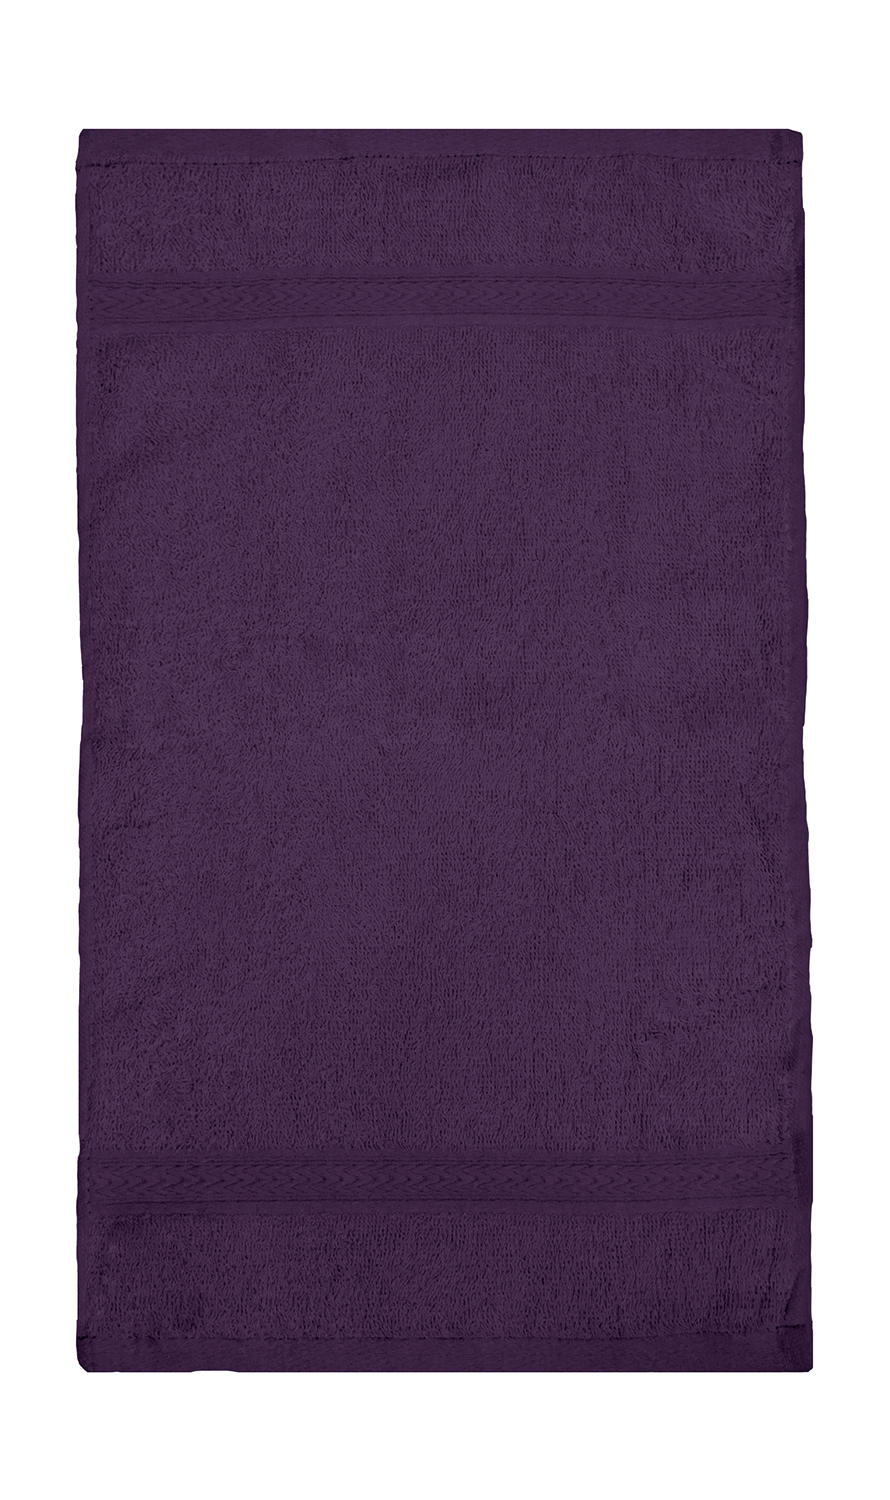  Rhine Guest Towel 30x50 cm in Farbe Aubergine